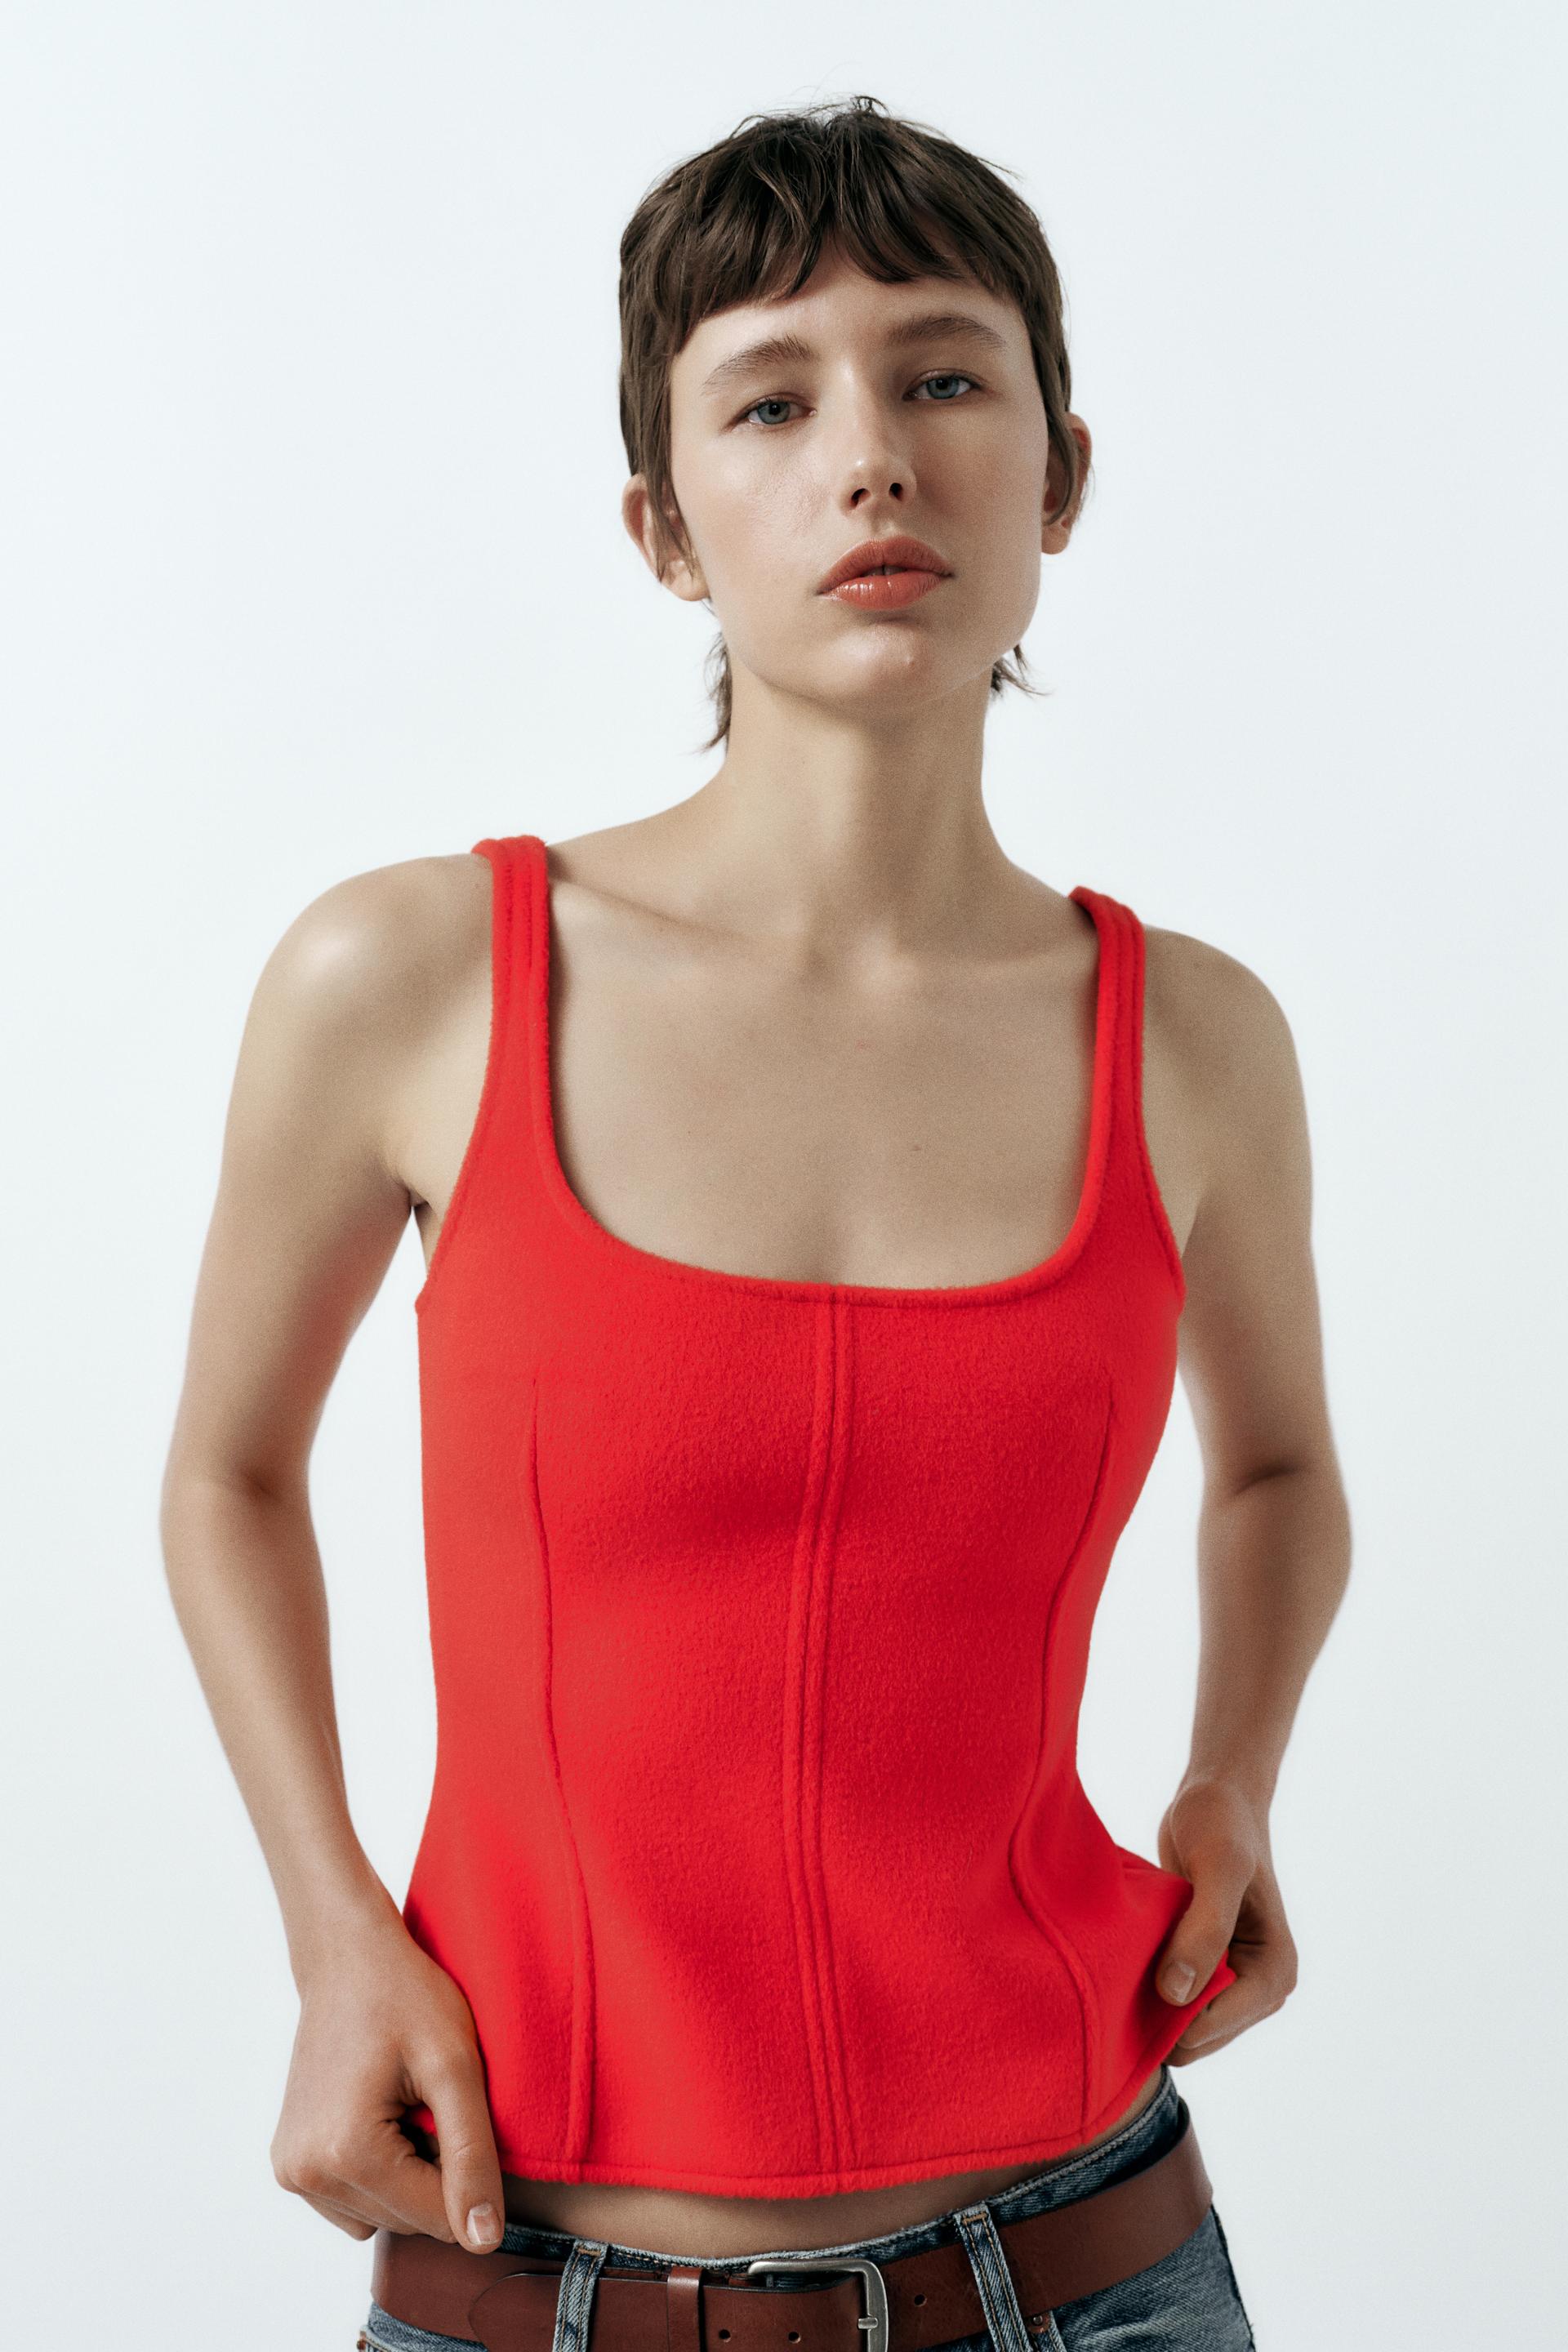 Profile Design Shirt Womens XL Red Tank Top Running 1/4 Zip